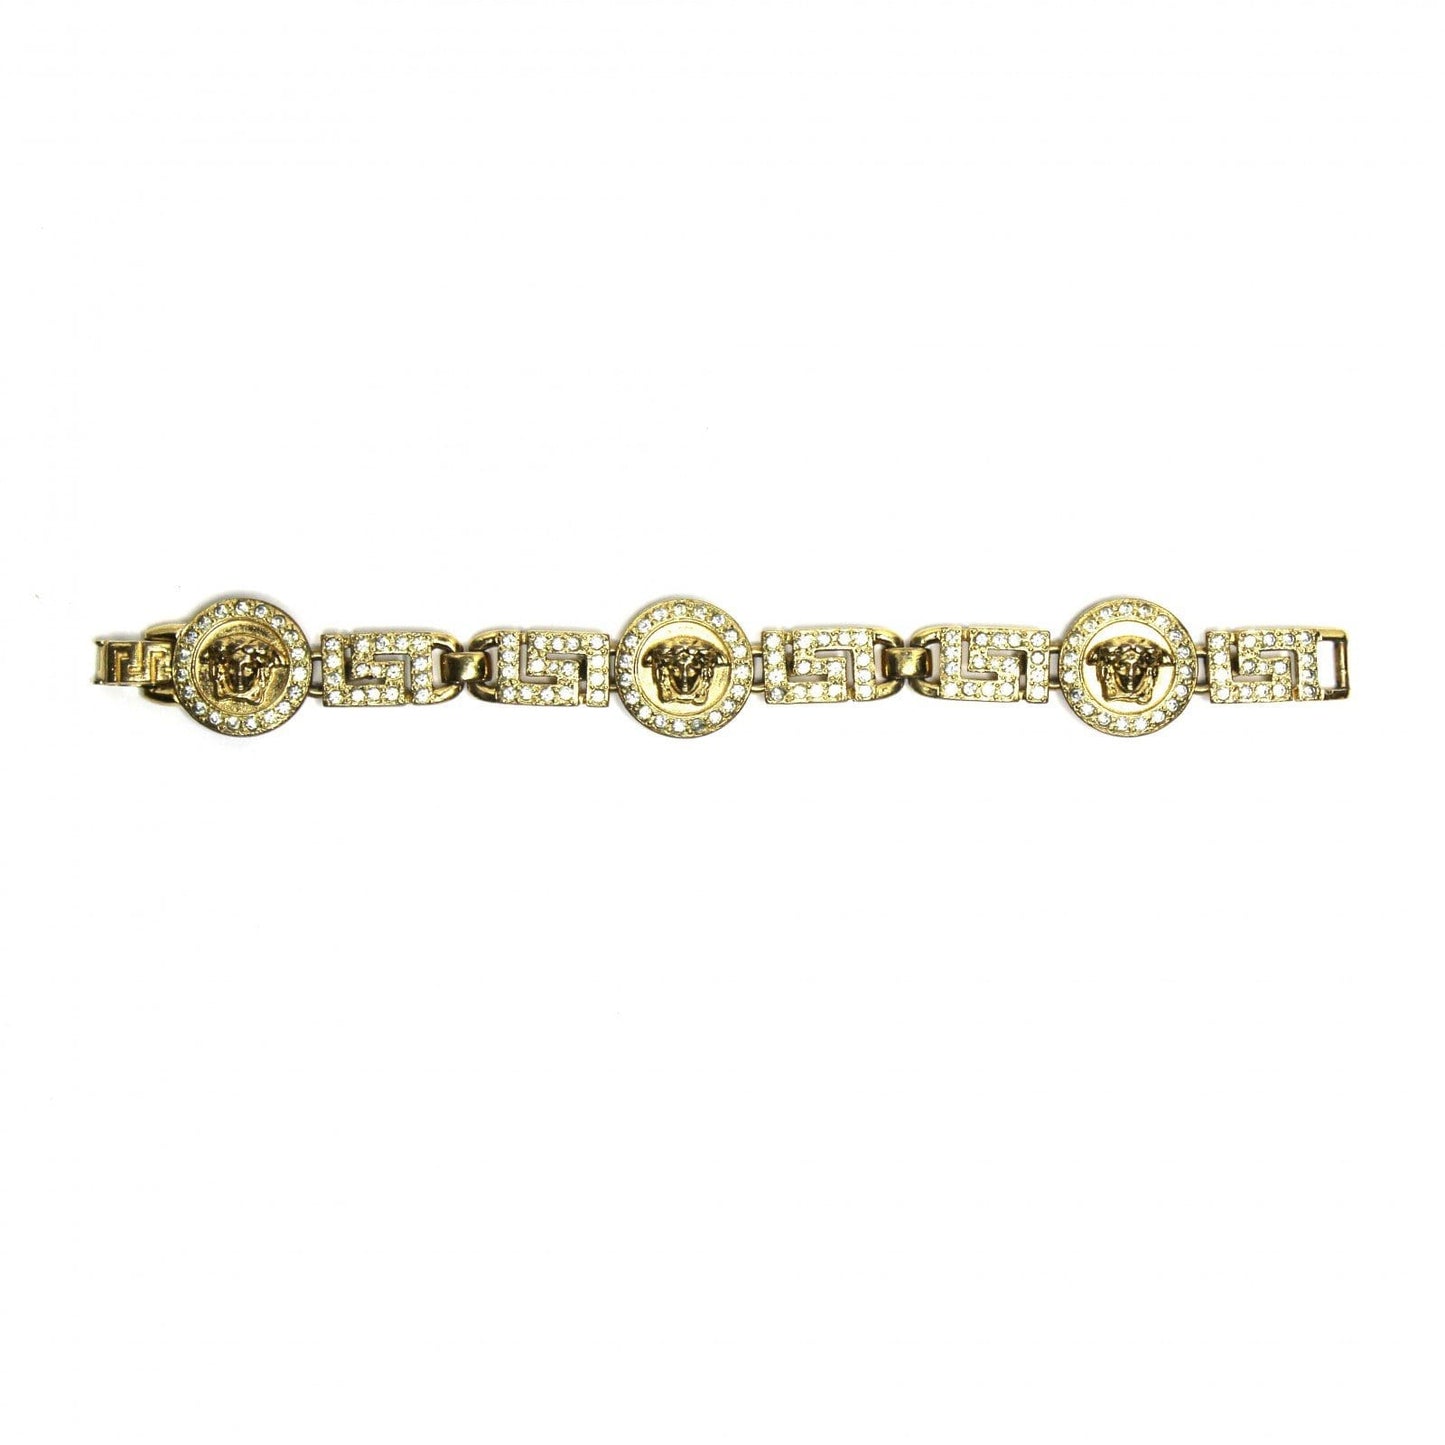 Vintage Versace Greek Key &amp; Medusa Head Bracelet with Crystal Accents RSTKD Vintage